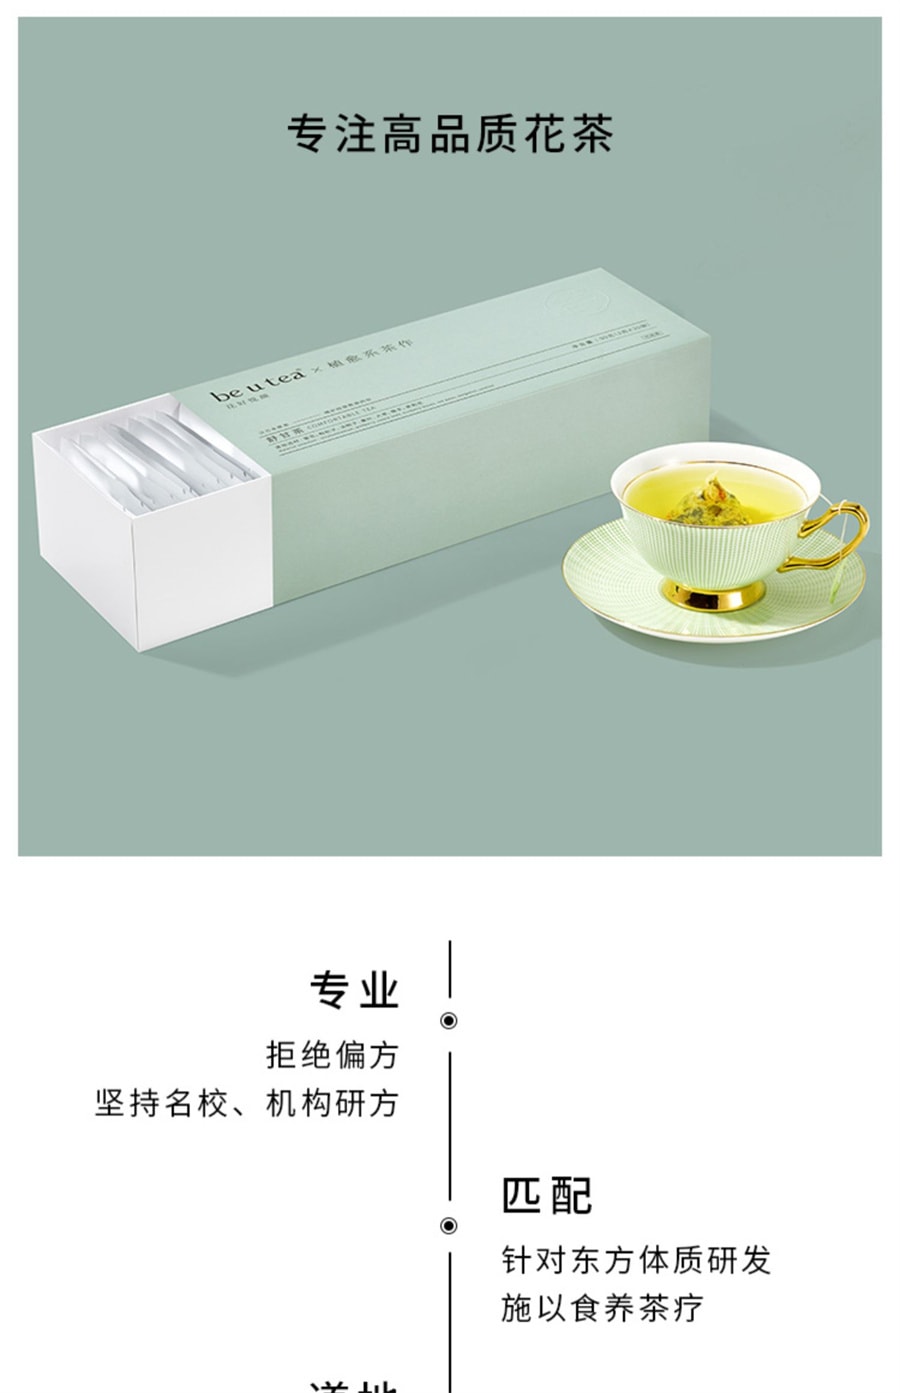 【中国直邮】新款Be u tea 菊花枸杞决明子 护肝养生茶 90g